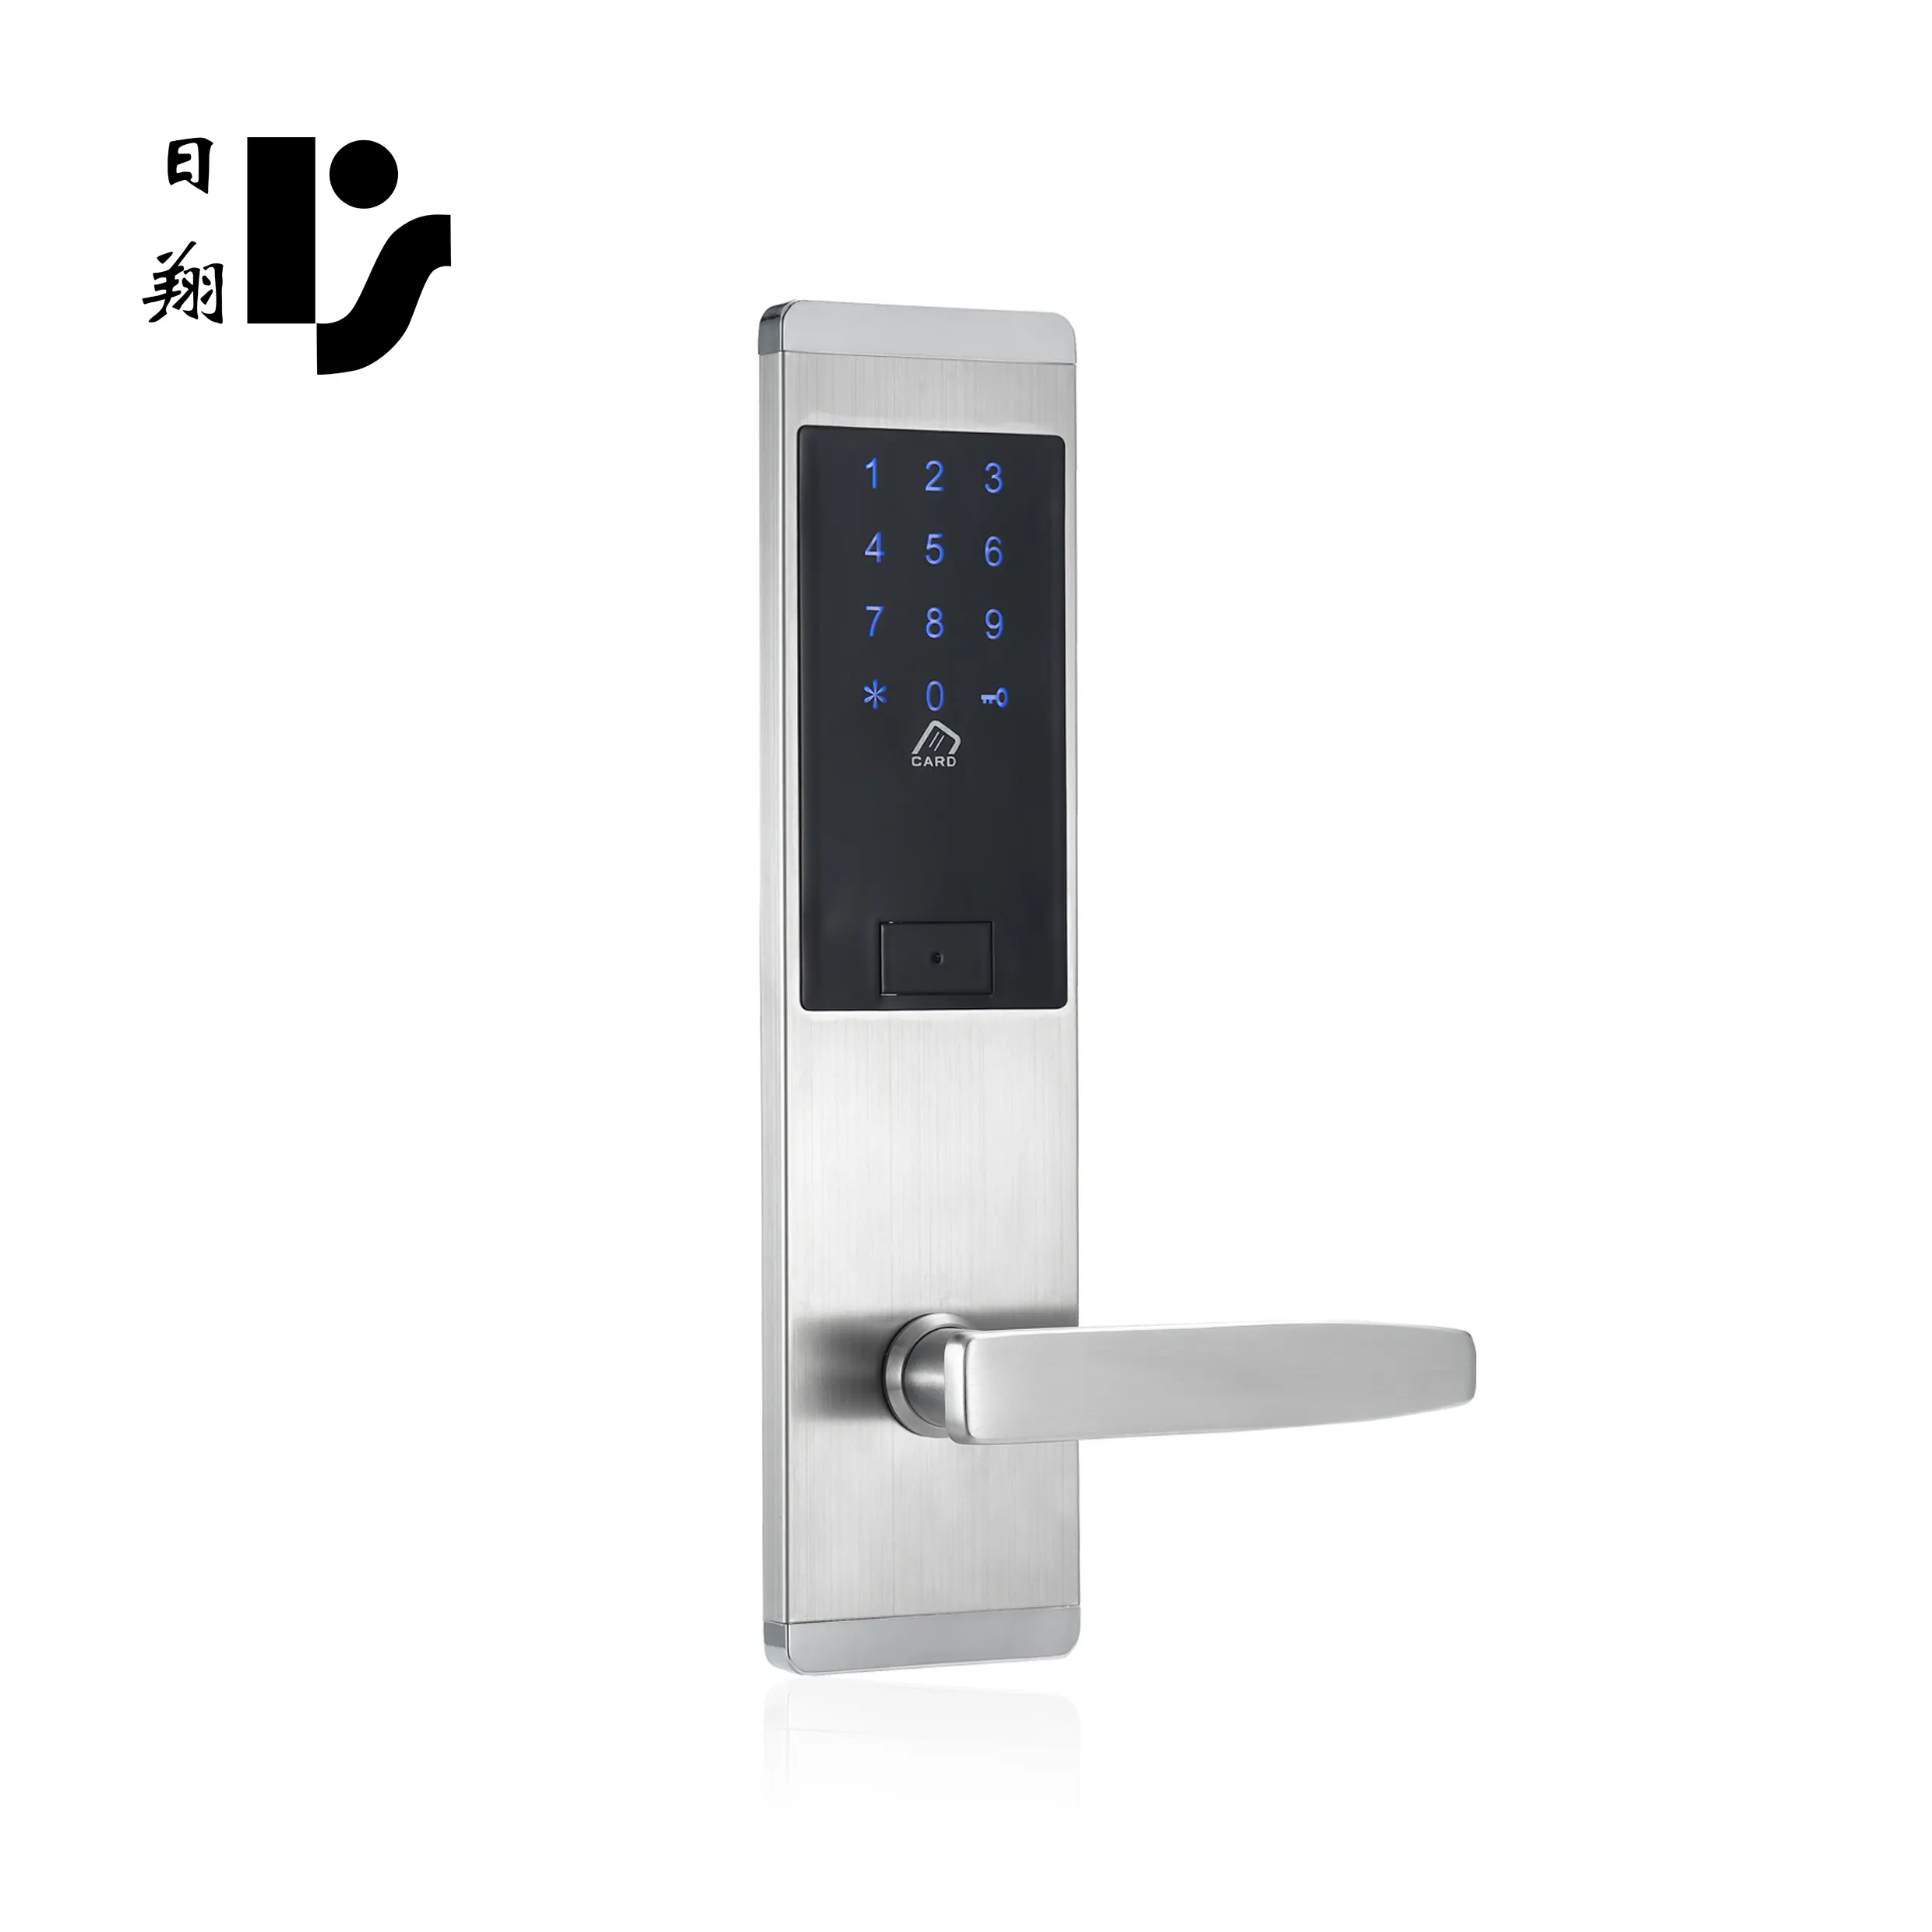 TT Lock แอปล็อคประตูดิจิตอล,ล็อกเกอร์ประตู Unity Rf 57การ์ดโรงแรมปุ่มกดอิเล็กทรอนิกส์ล็อคแบบรวม